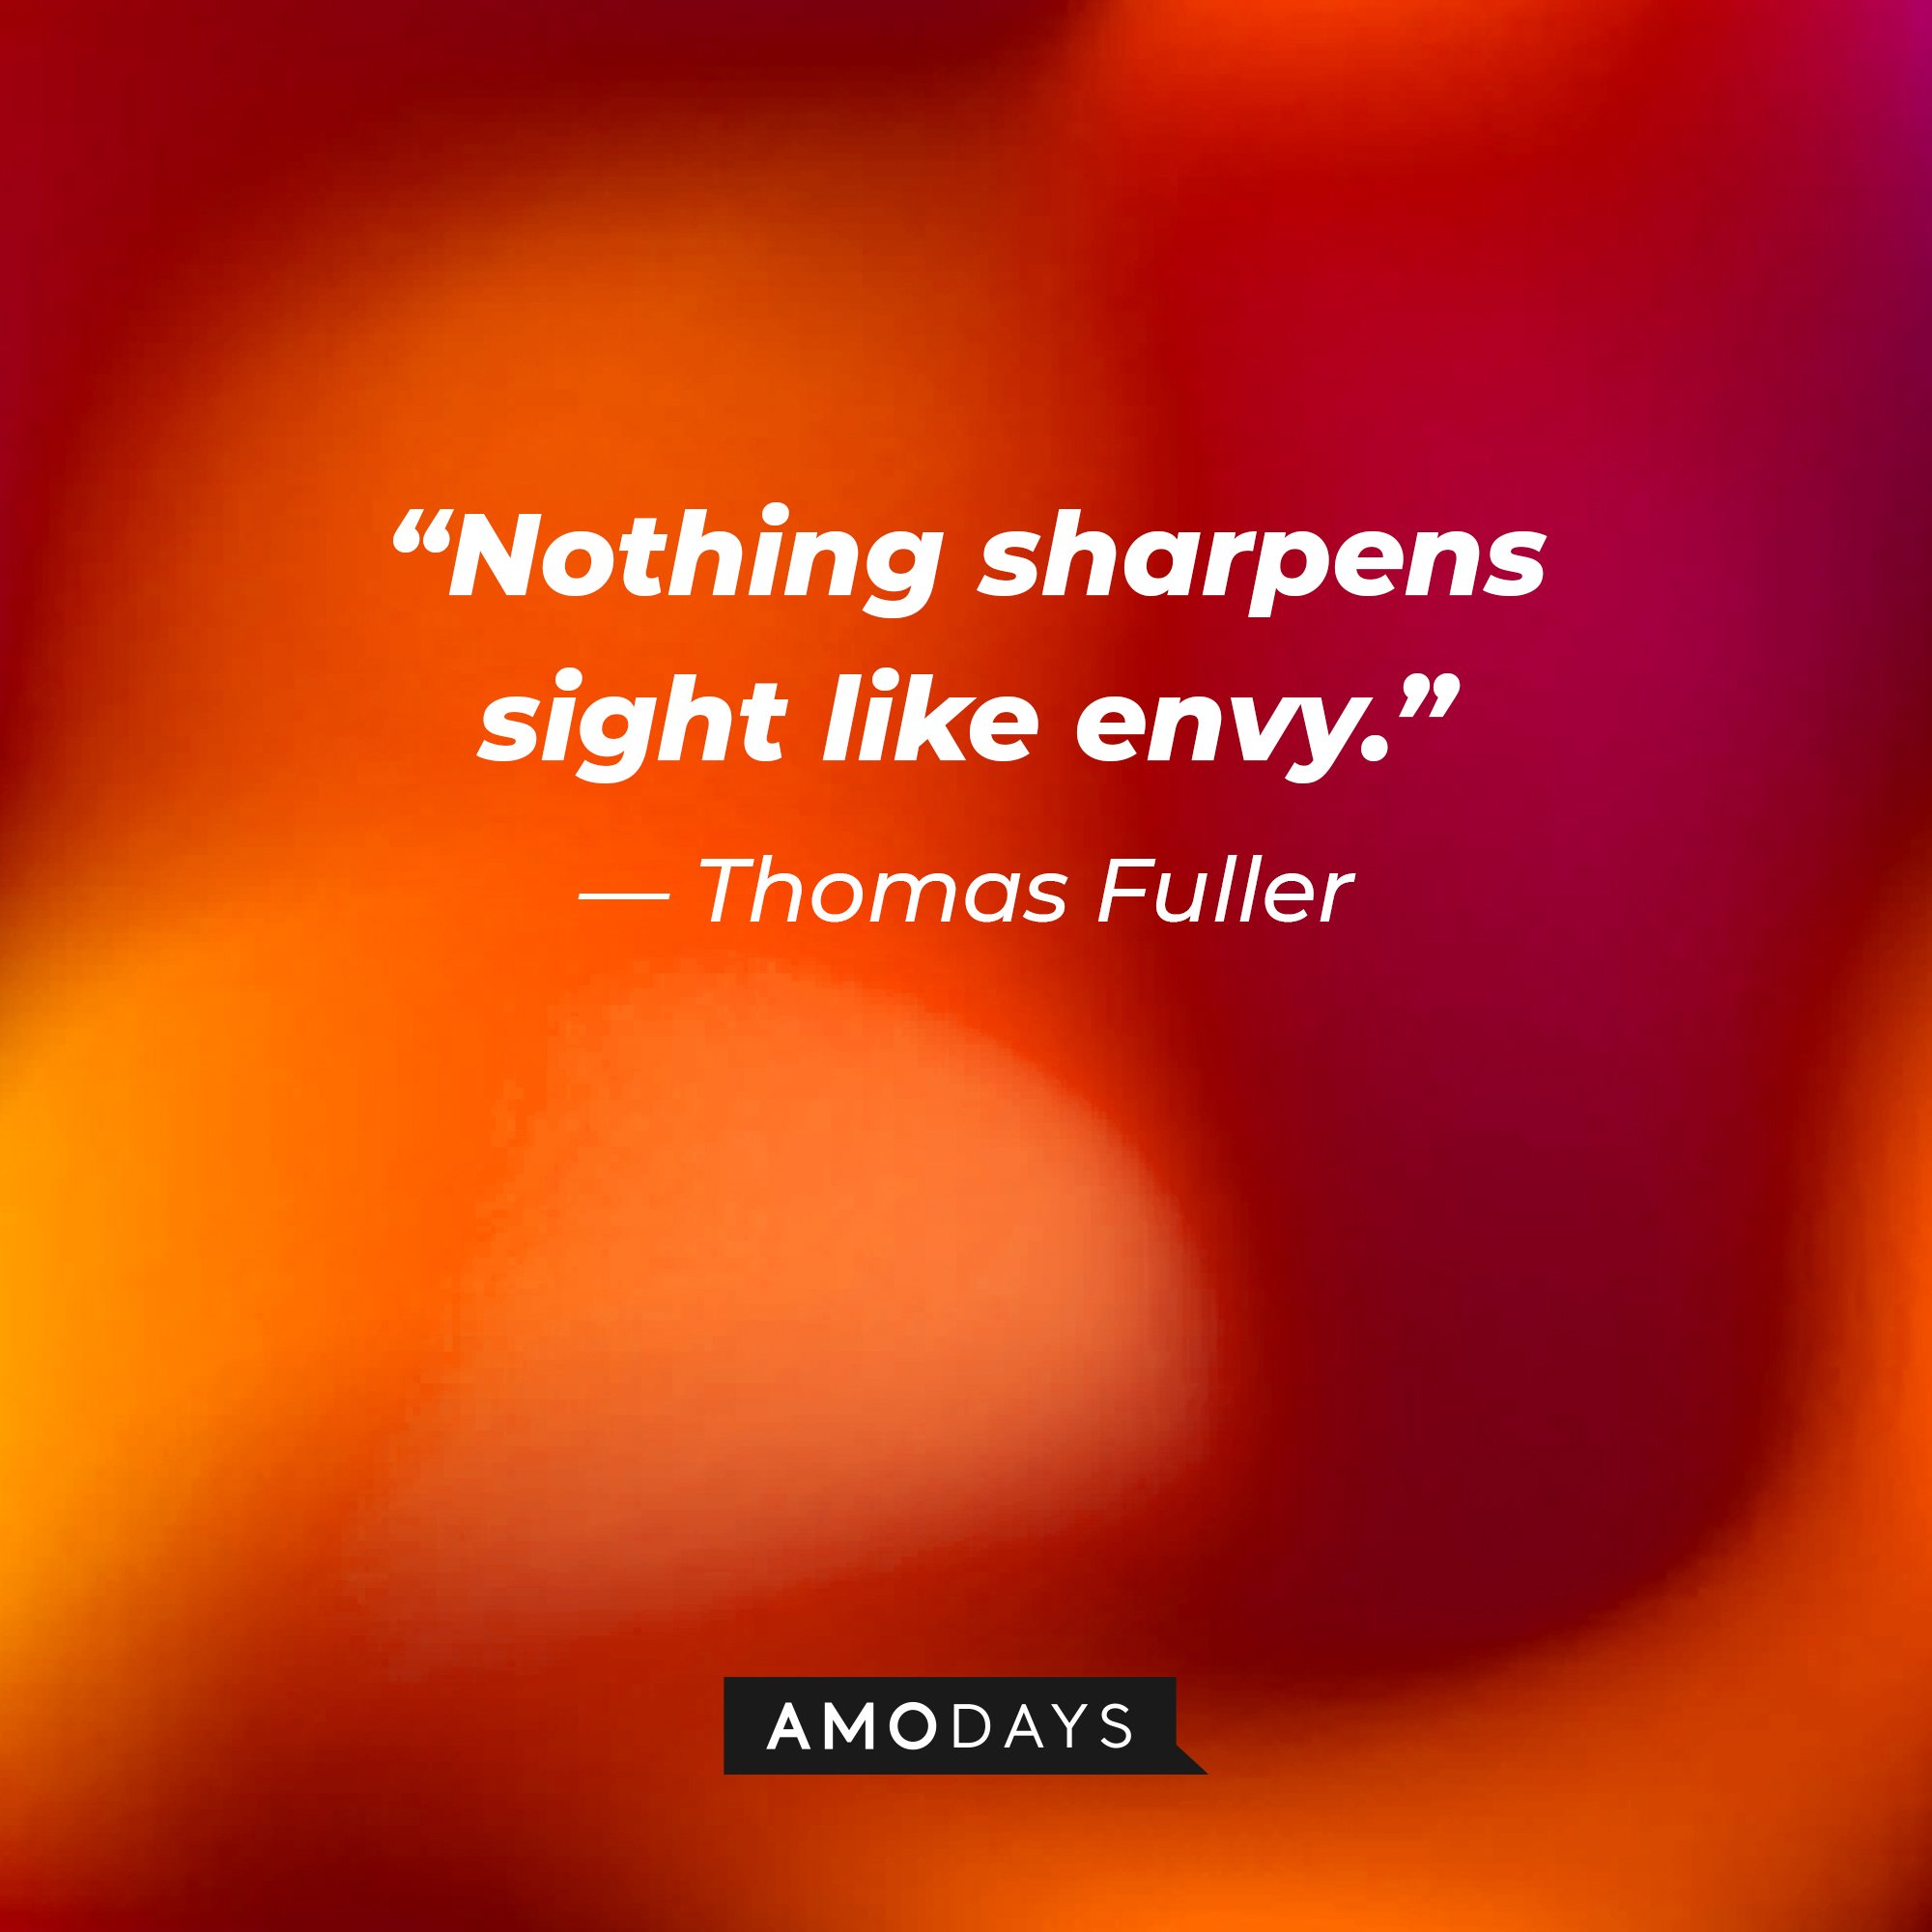 Thomas Fuller's quote: “Nothing sharpens sight like envy.” | Image: AmoDays